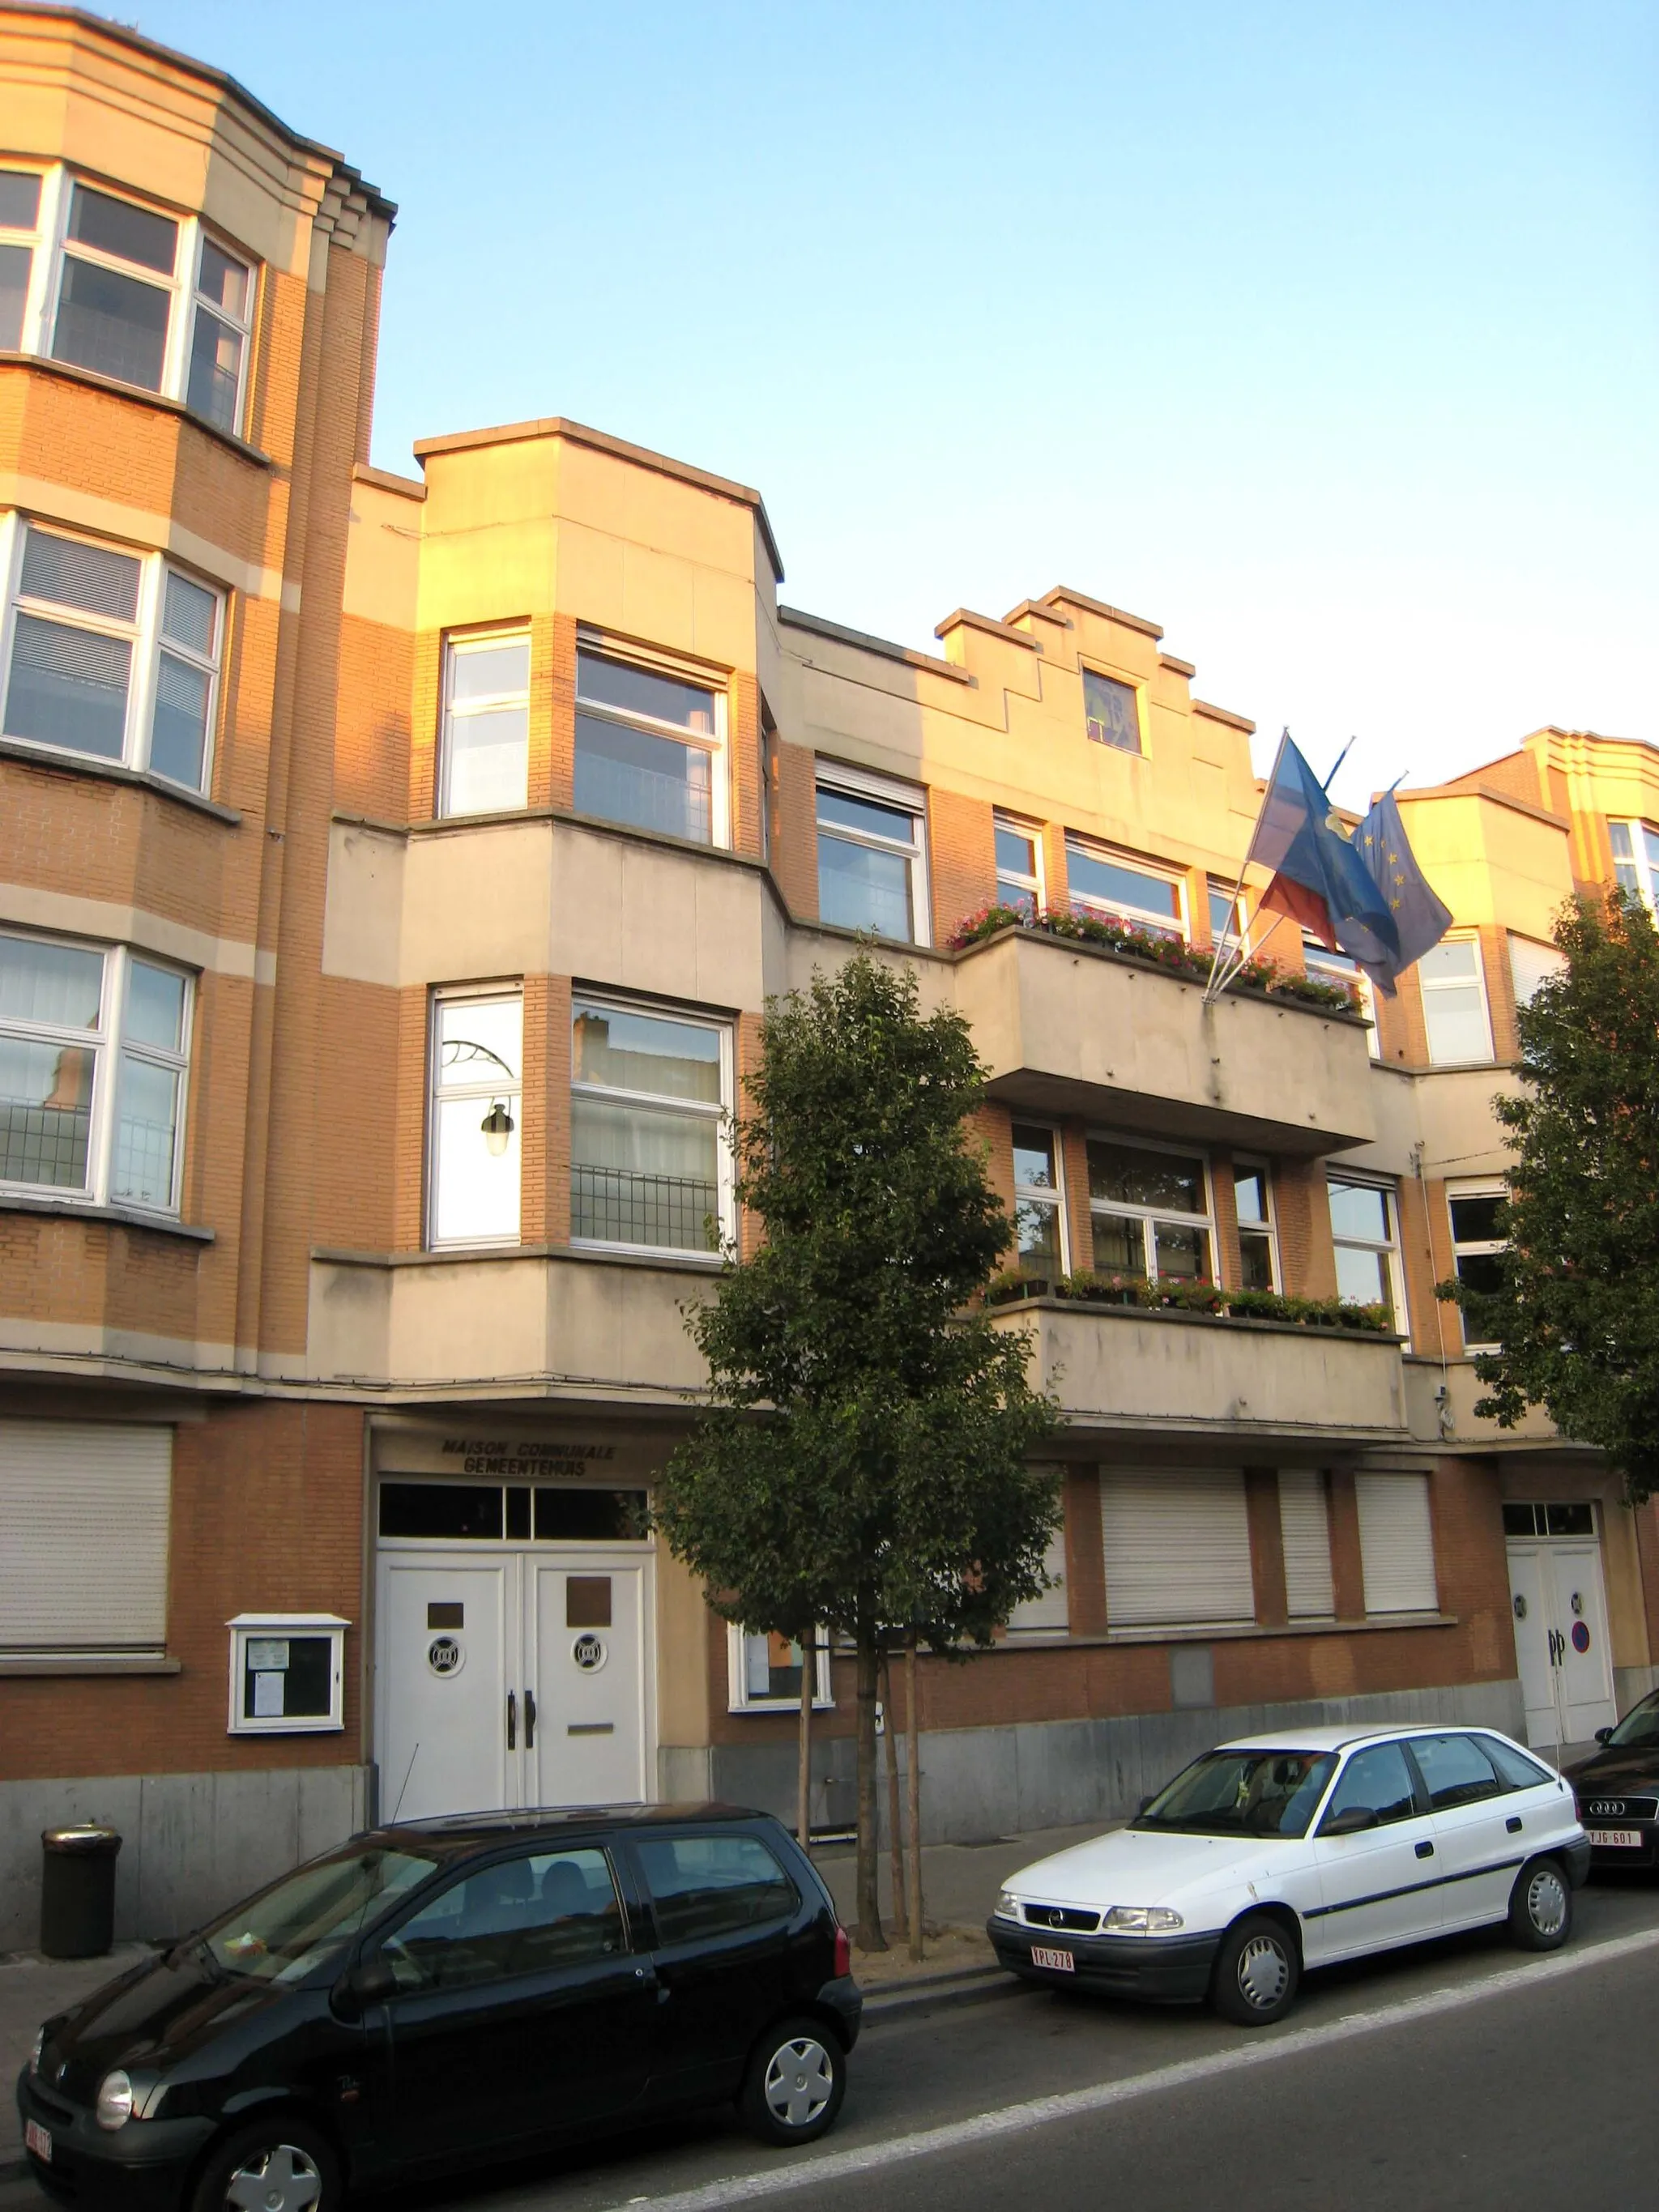 Photo showing: Ganshoren town hall (maison communale / gemeentehuis)